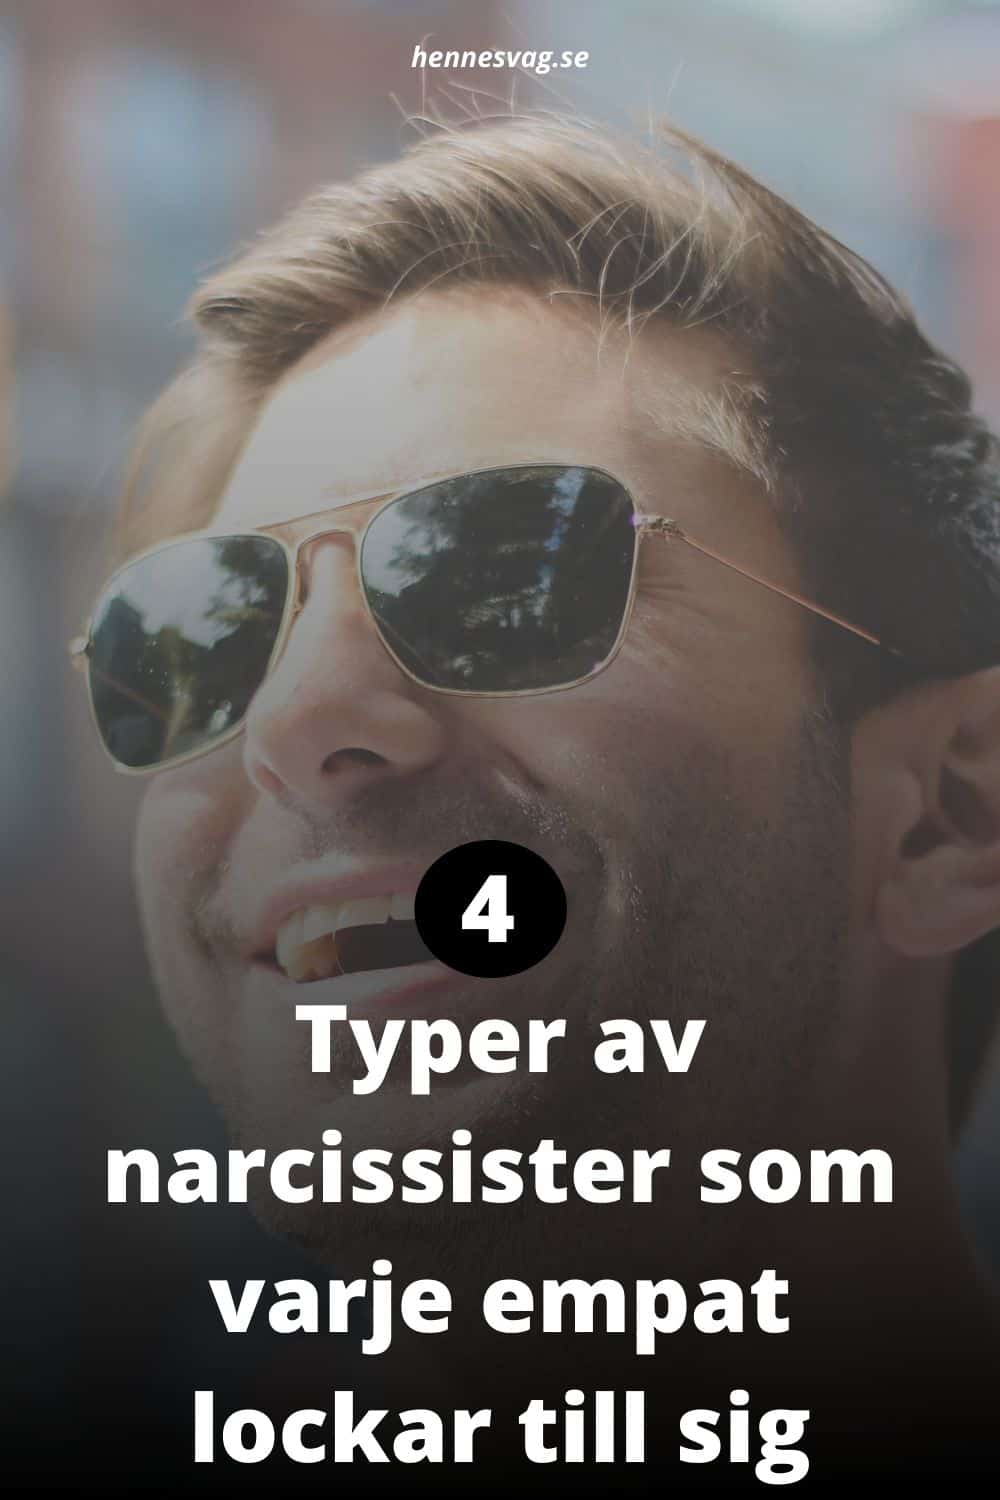 4 Typer av narcissister som varje empat lockar till sig